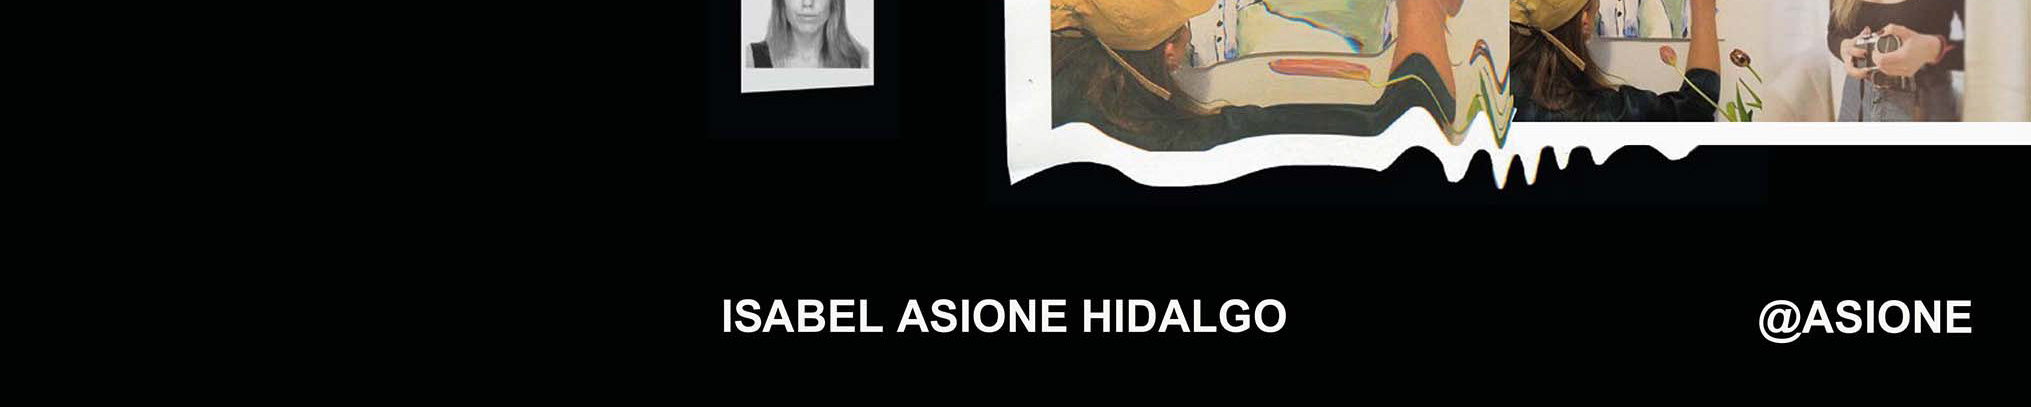 Profielbanner van Isabel asione Hidalgo